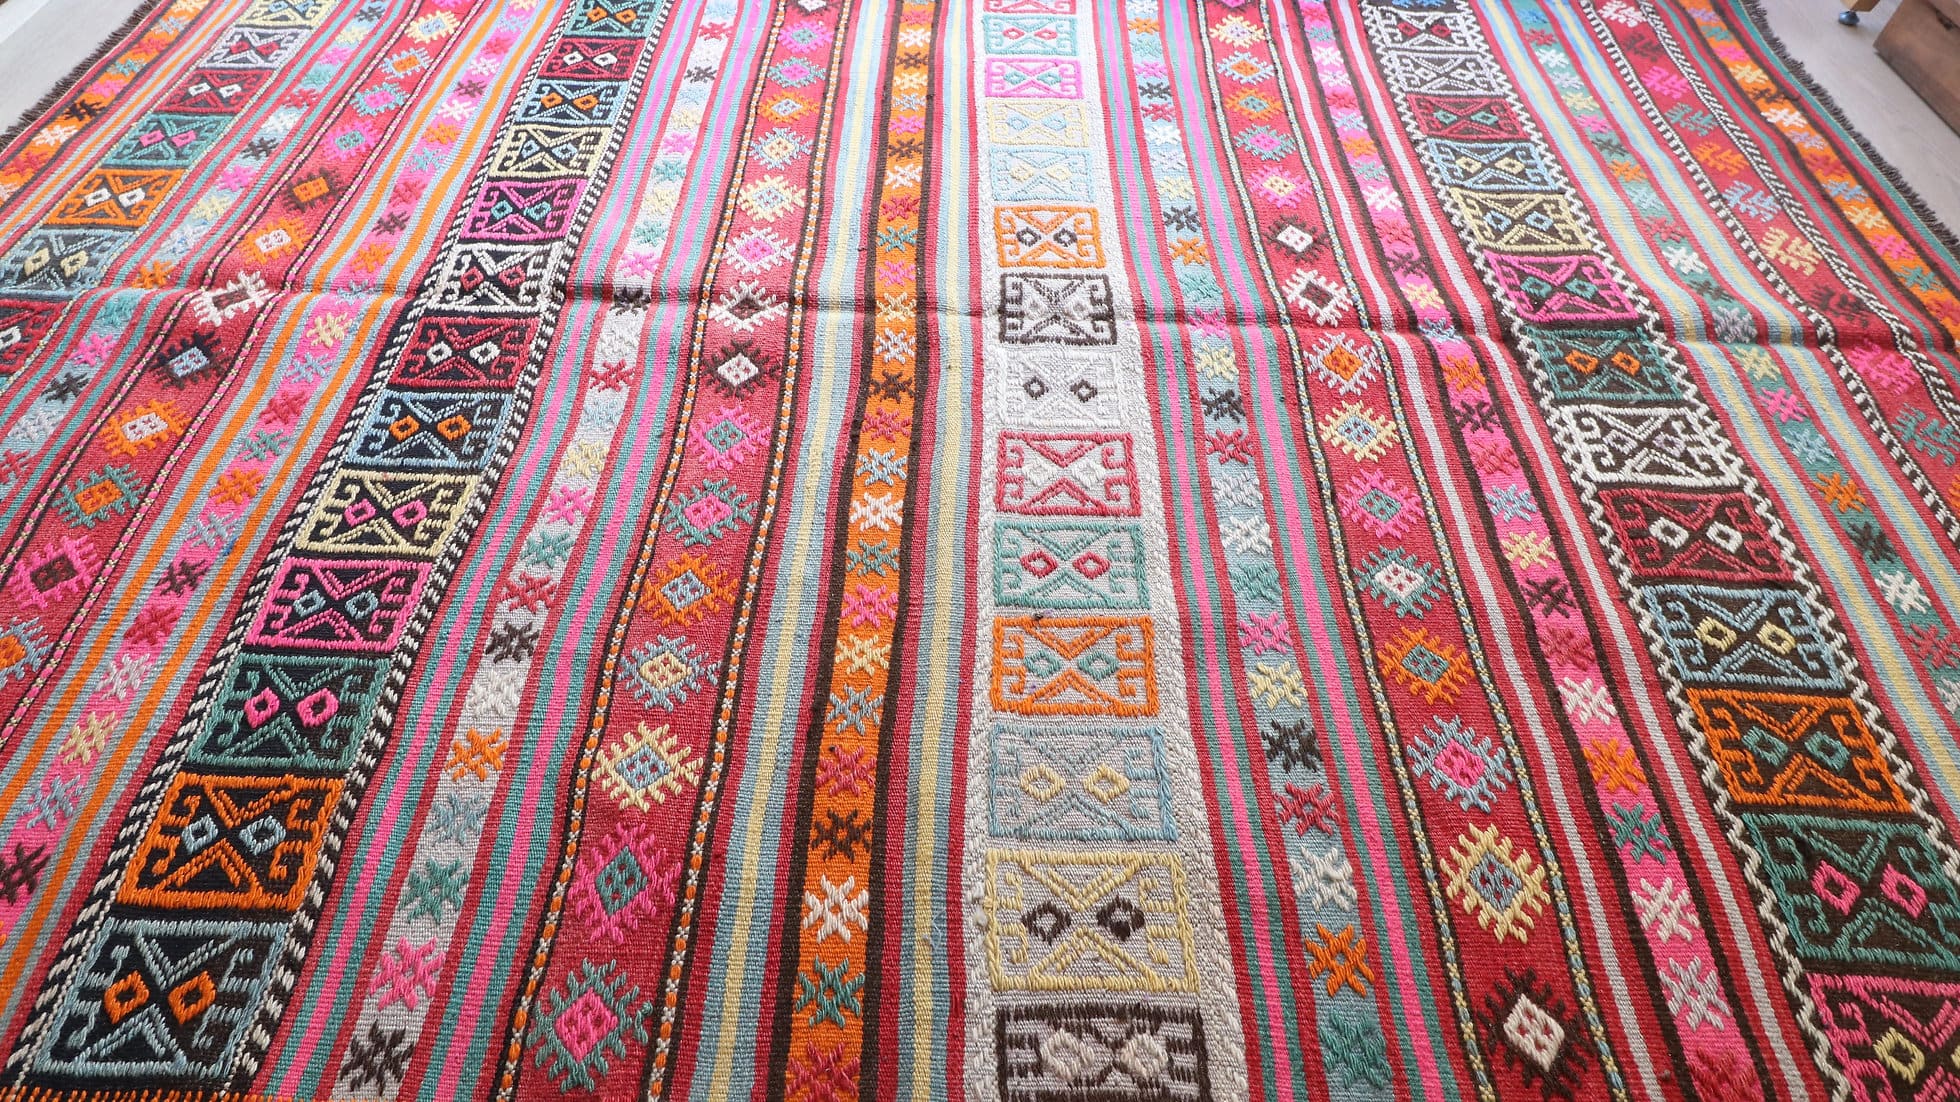 Tribal style vintage Kilim rug in pastel tones